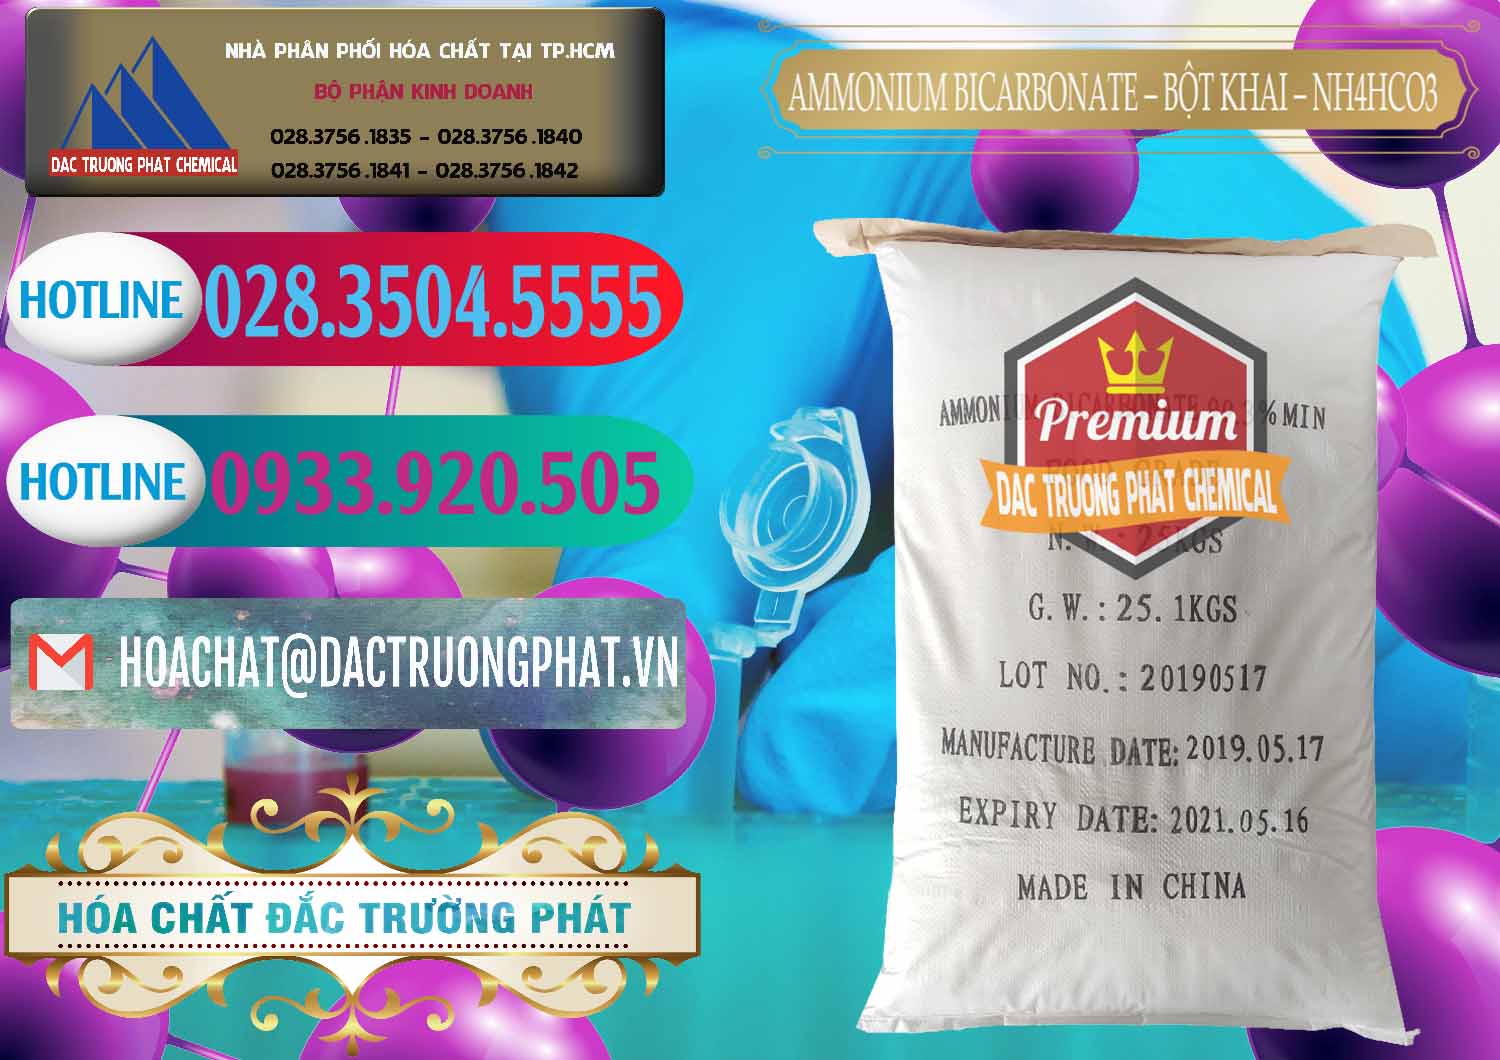 Phân phối _ bán Ammonium Bicarbonate - Bột Khai Food Grade Trung Quốc China - 0018 - Phân phối - cung cấp hóa chất tại TP.HCM - truongphat.vn